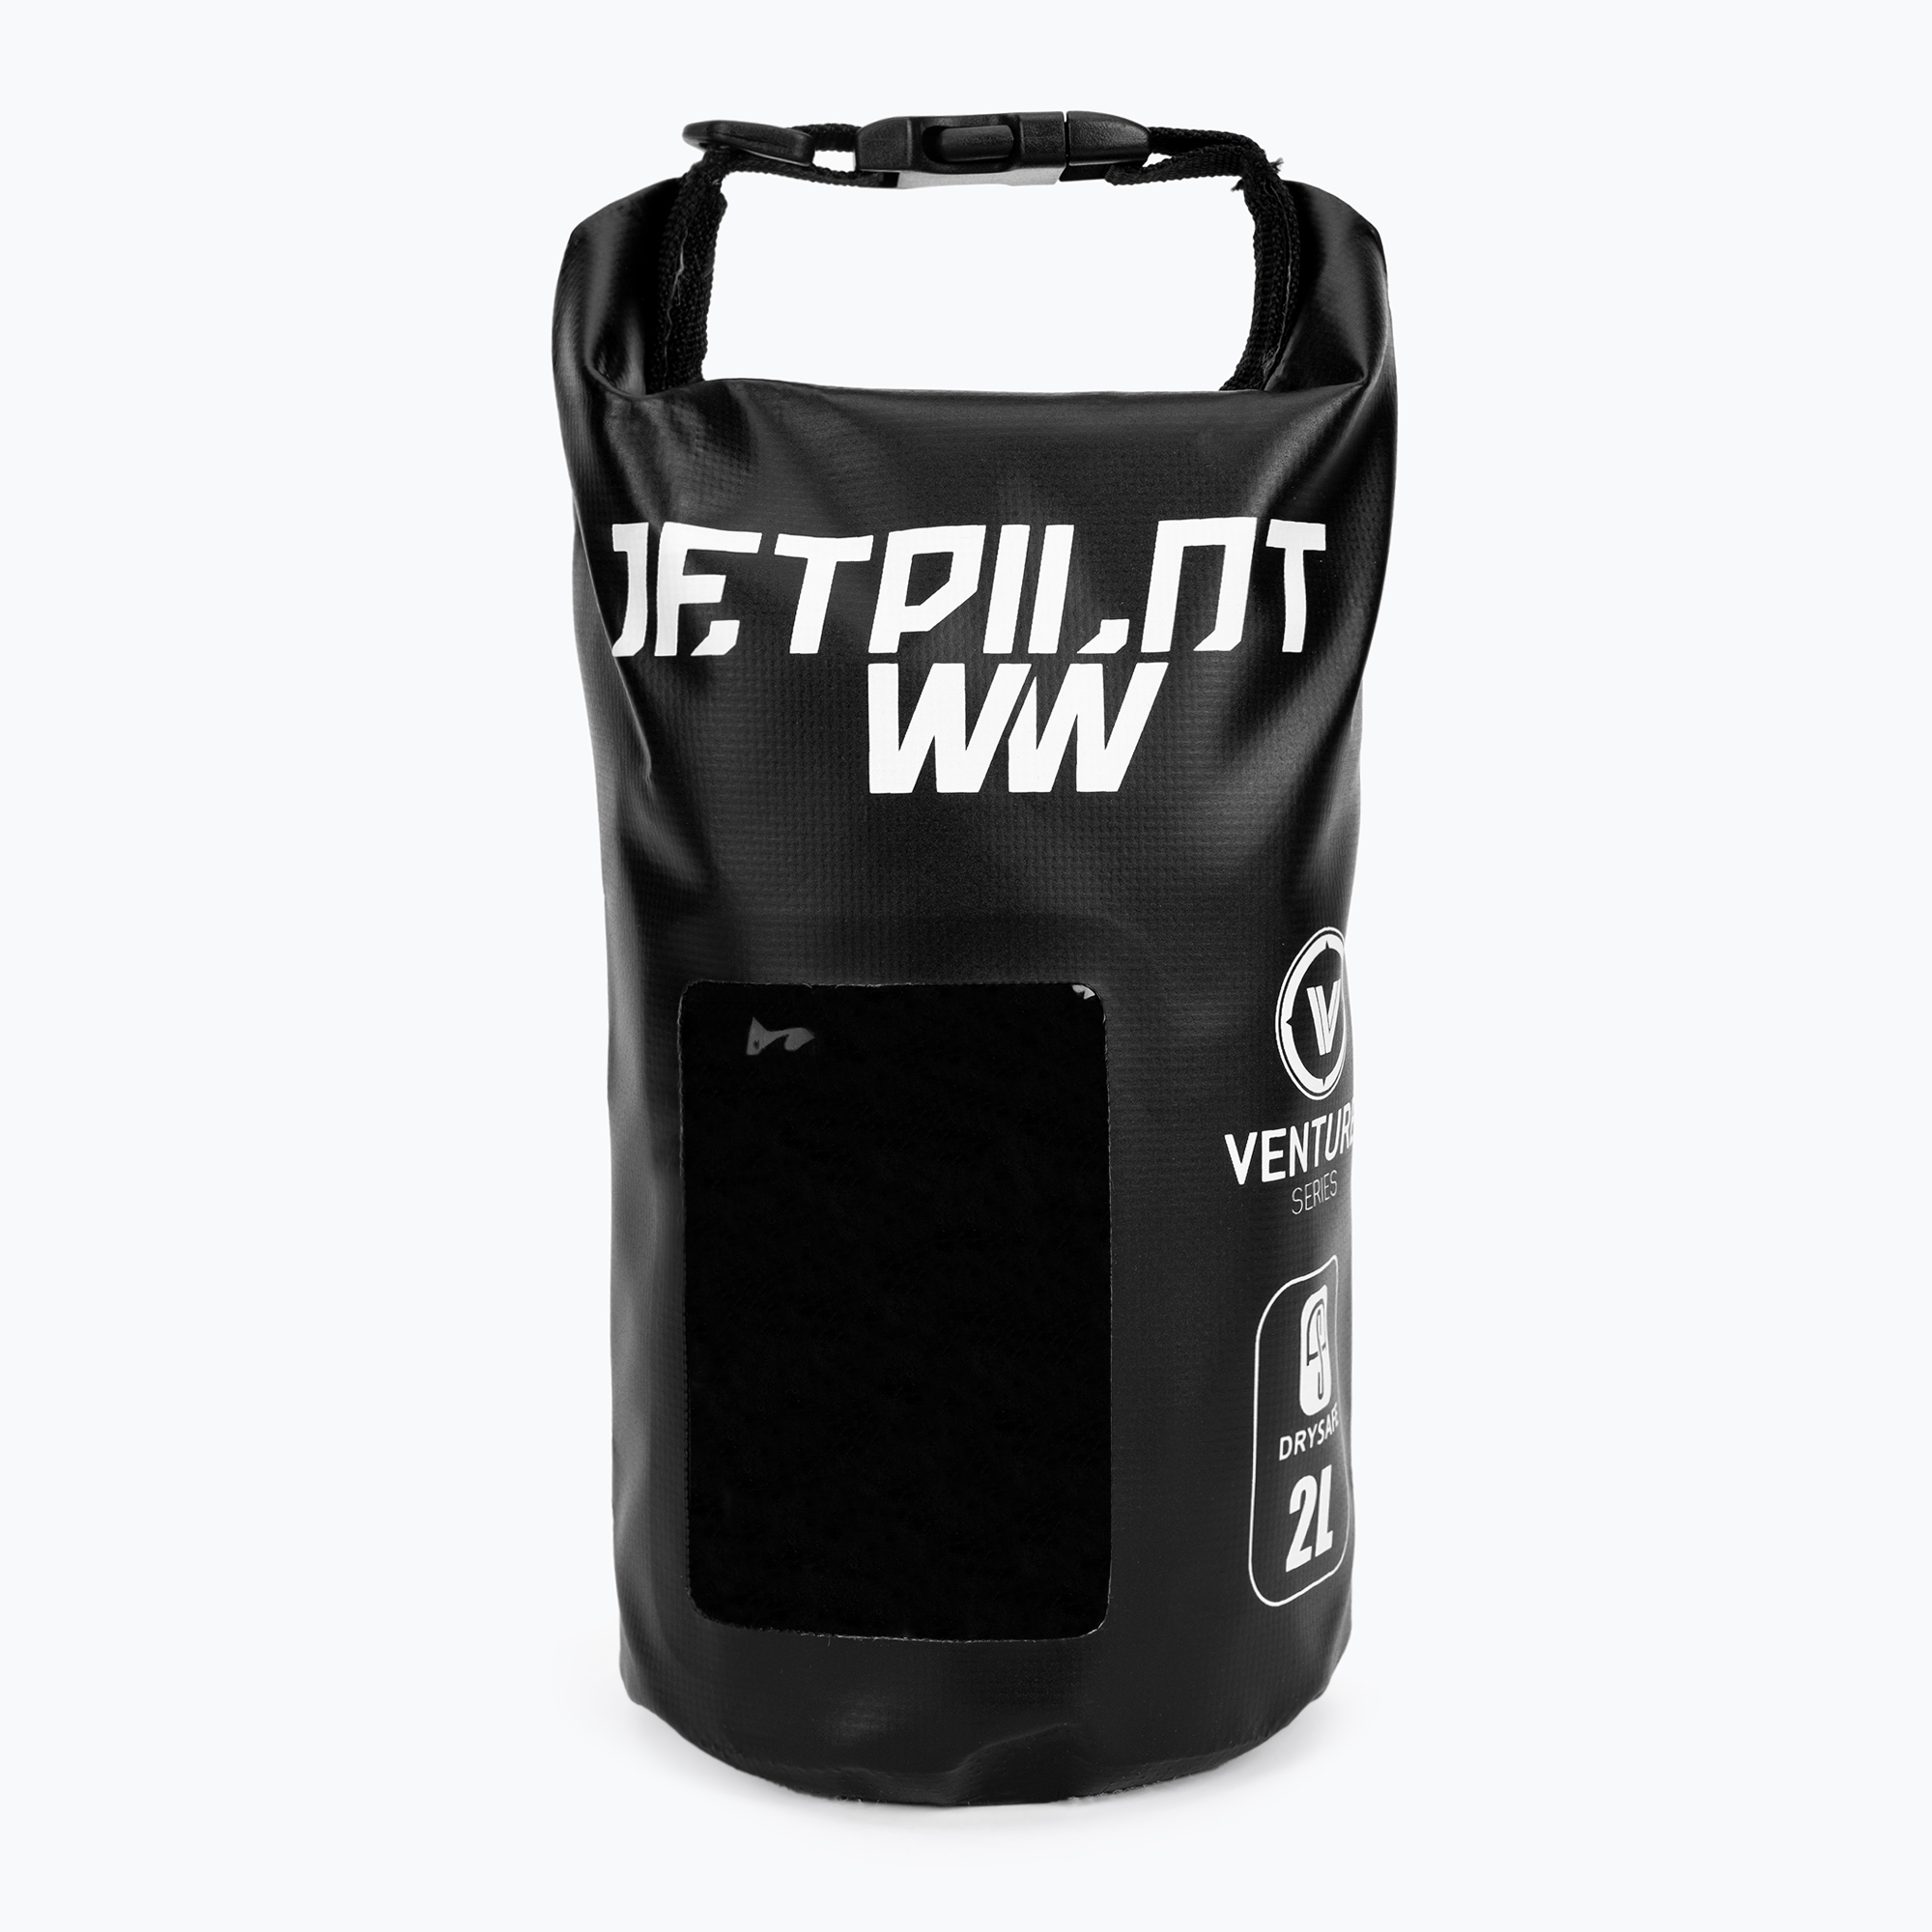 Jetpilot Venture Venture Drysafe sac impermeabil negru 20092